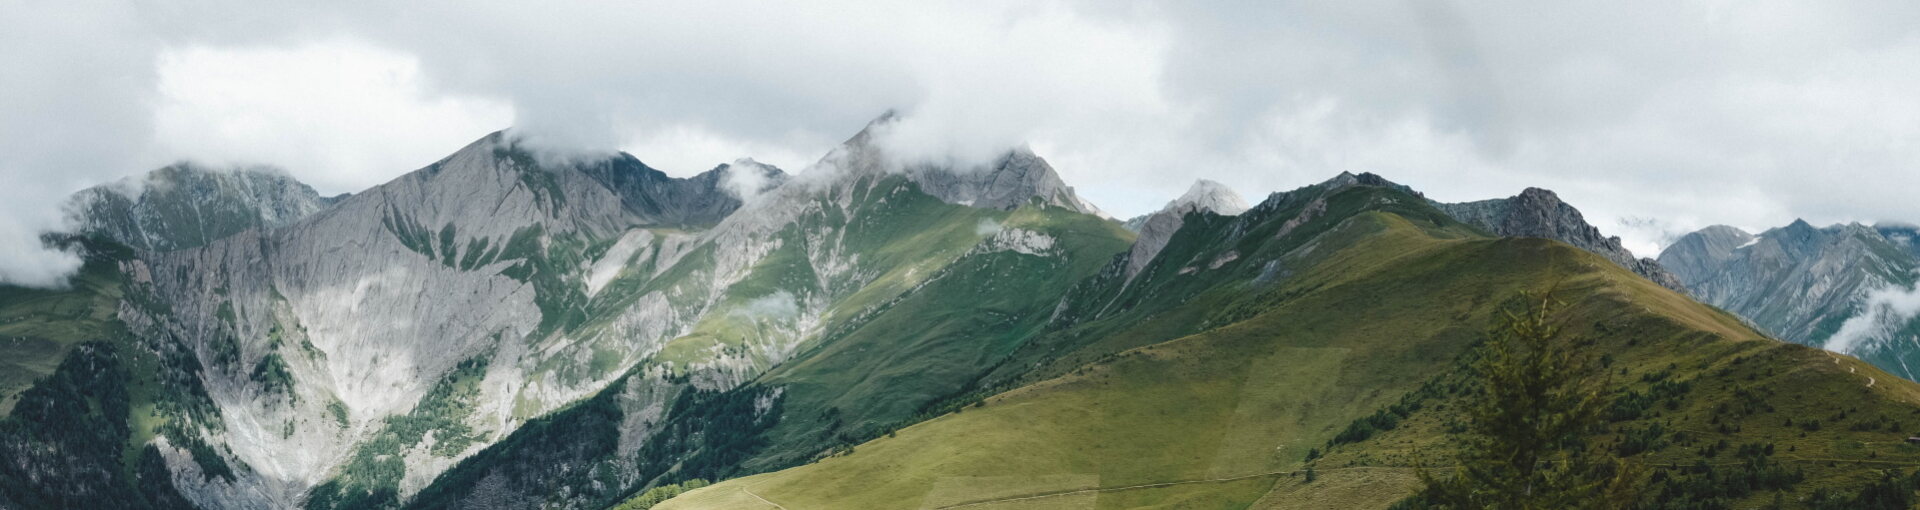 Tirol unter Top 15 im internationalen Nachhaltigkeitsvergleich